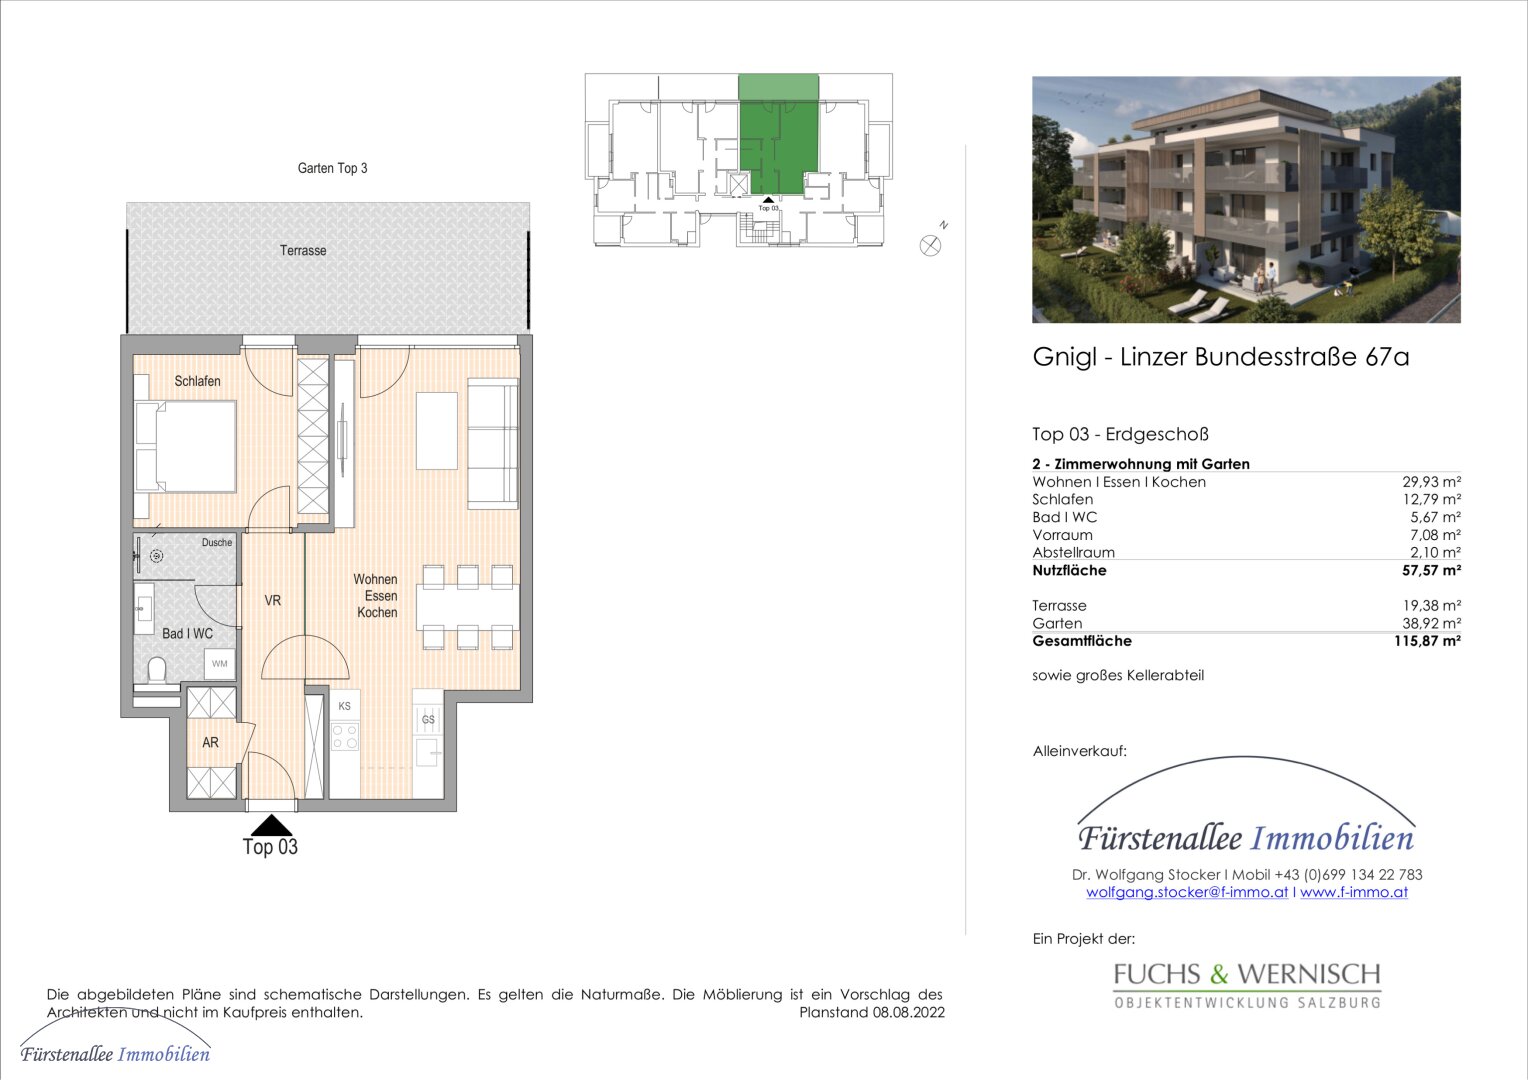 KAUF SALZBURG-STADT: NEUBAU/ERSTBEZUG - LINZER BUNDESSTRASSE 67: 58 m² 2-Zimmer-Gartenwohnung - mit 58 m² Eigengarten und Terrasse - Top W 3  - bezugsfertig binnen 4-6 Wochen